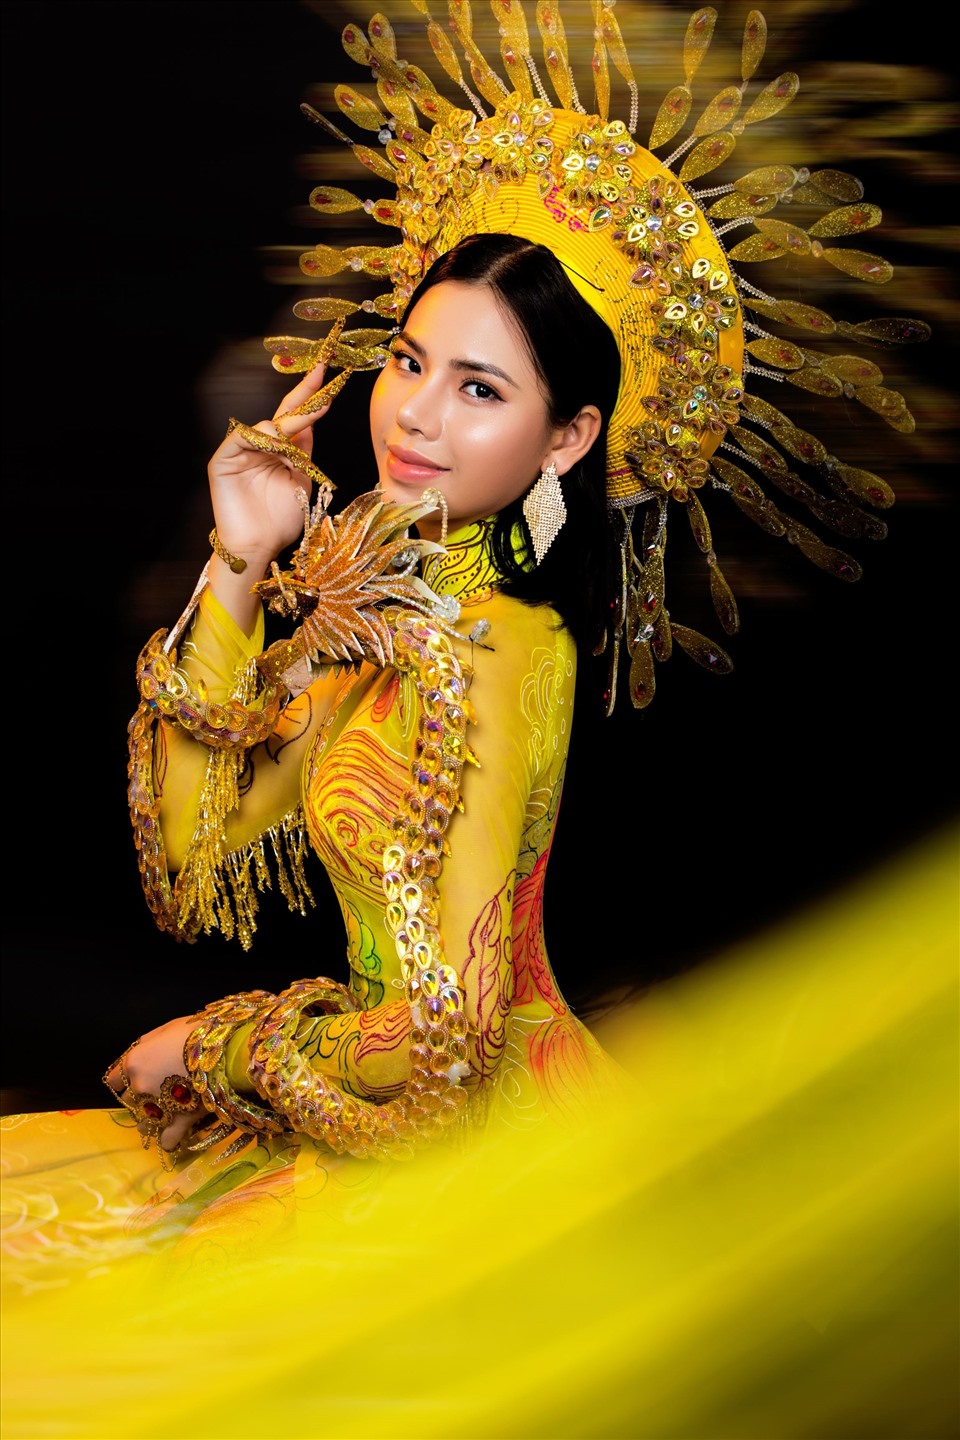 Có được thành tích ban đầu, Minh Tâm được kỳ vọng sẽ gặt hái thành công tại Hoa hậu Việt Nam 2020.